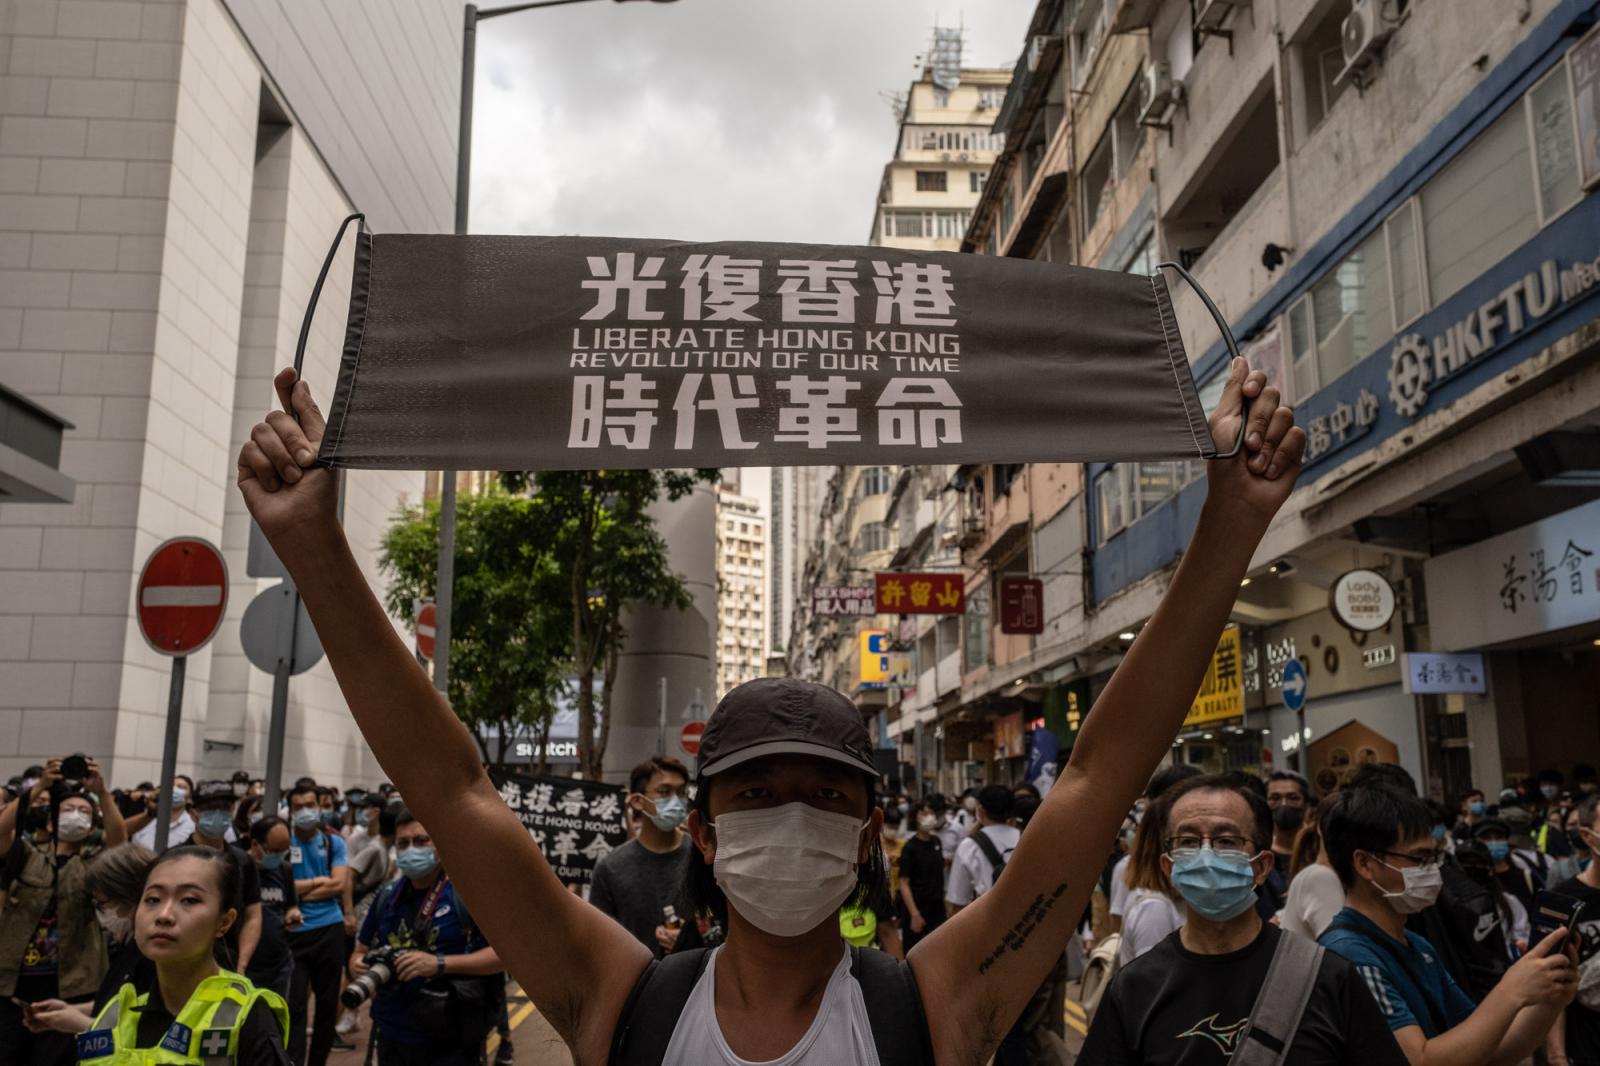 Liberate Hong Kong Revolution o...isonment. Hong Kong 01/07/2020.